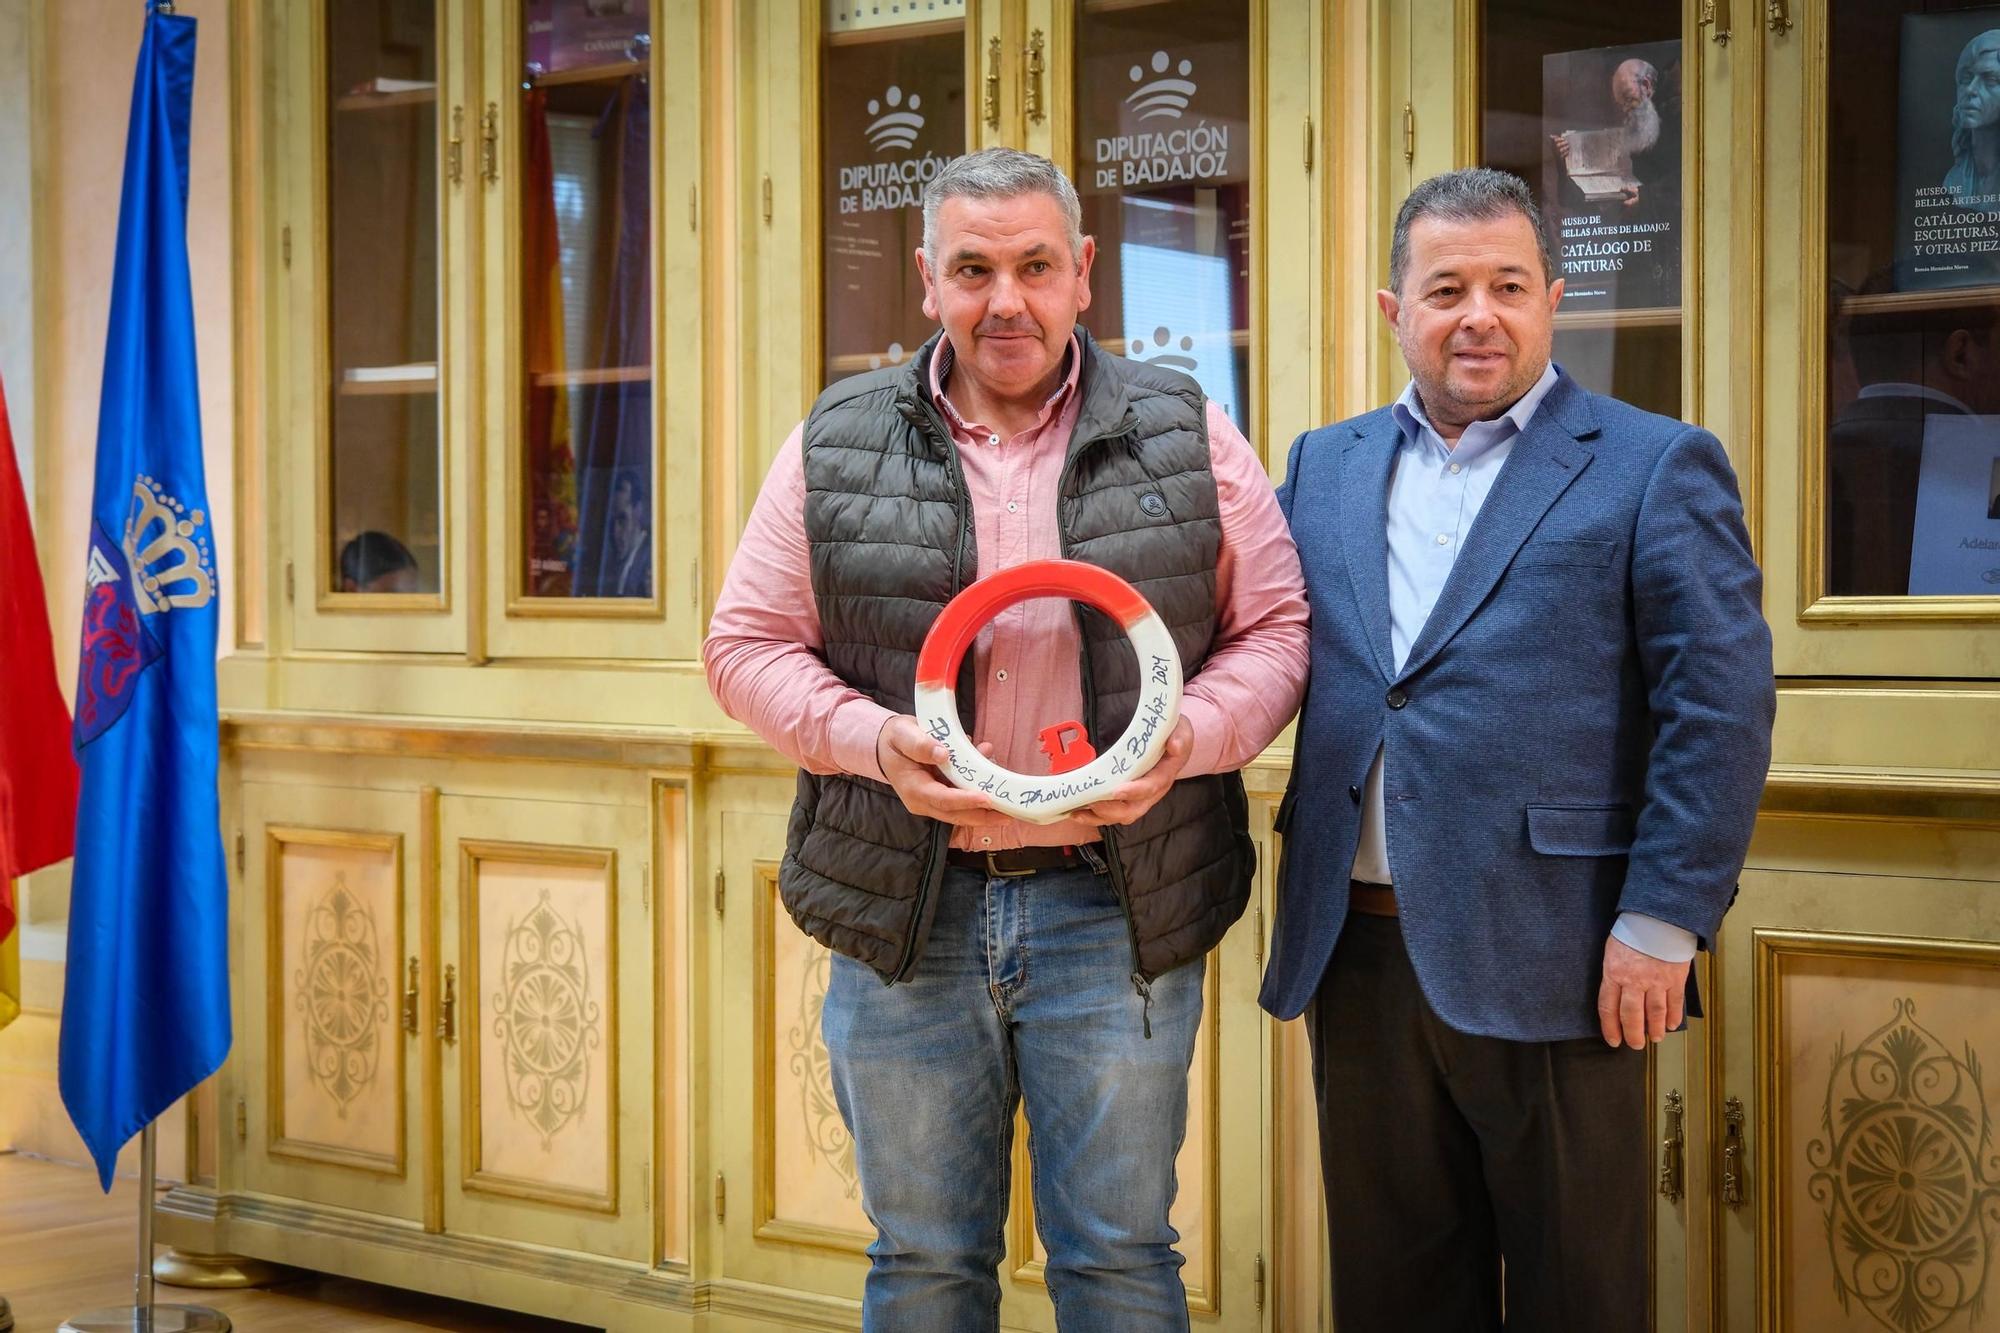 Inocencio Rodríguez, alcalde de La Lapa, recoge el premio de la Provincia en la categoría del deporte